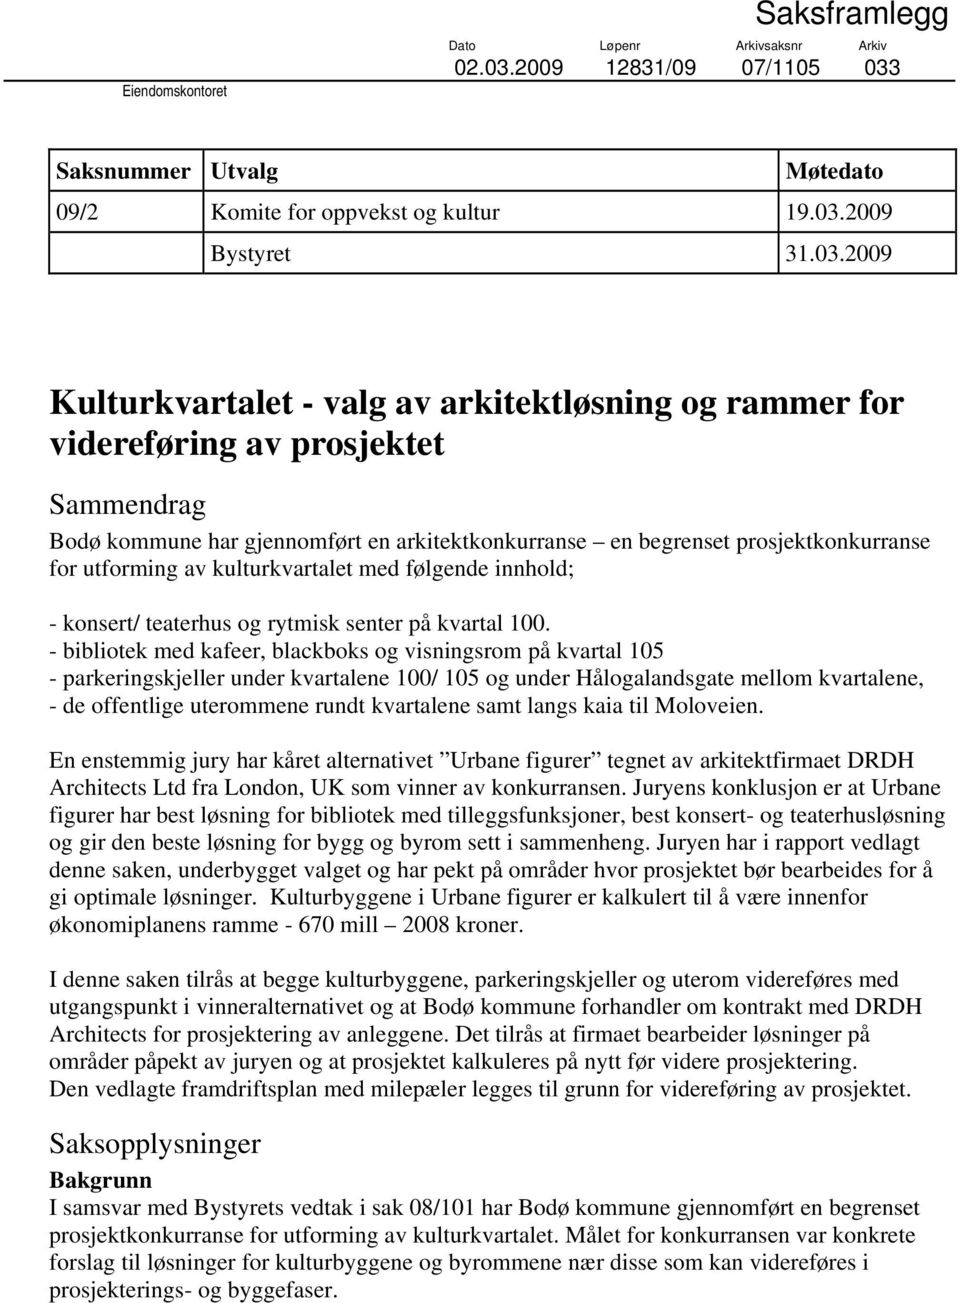 Saksnummer Utvalg Møtedato 09/2 Komite for oppvekst og kultur 19.03.